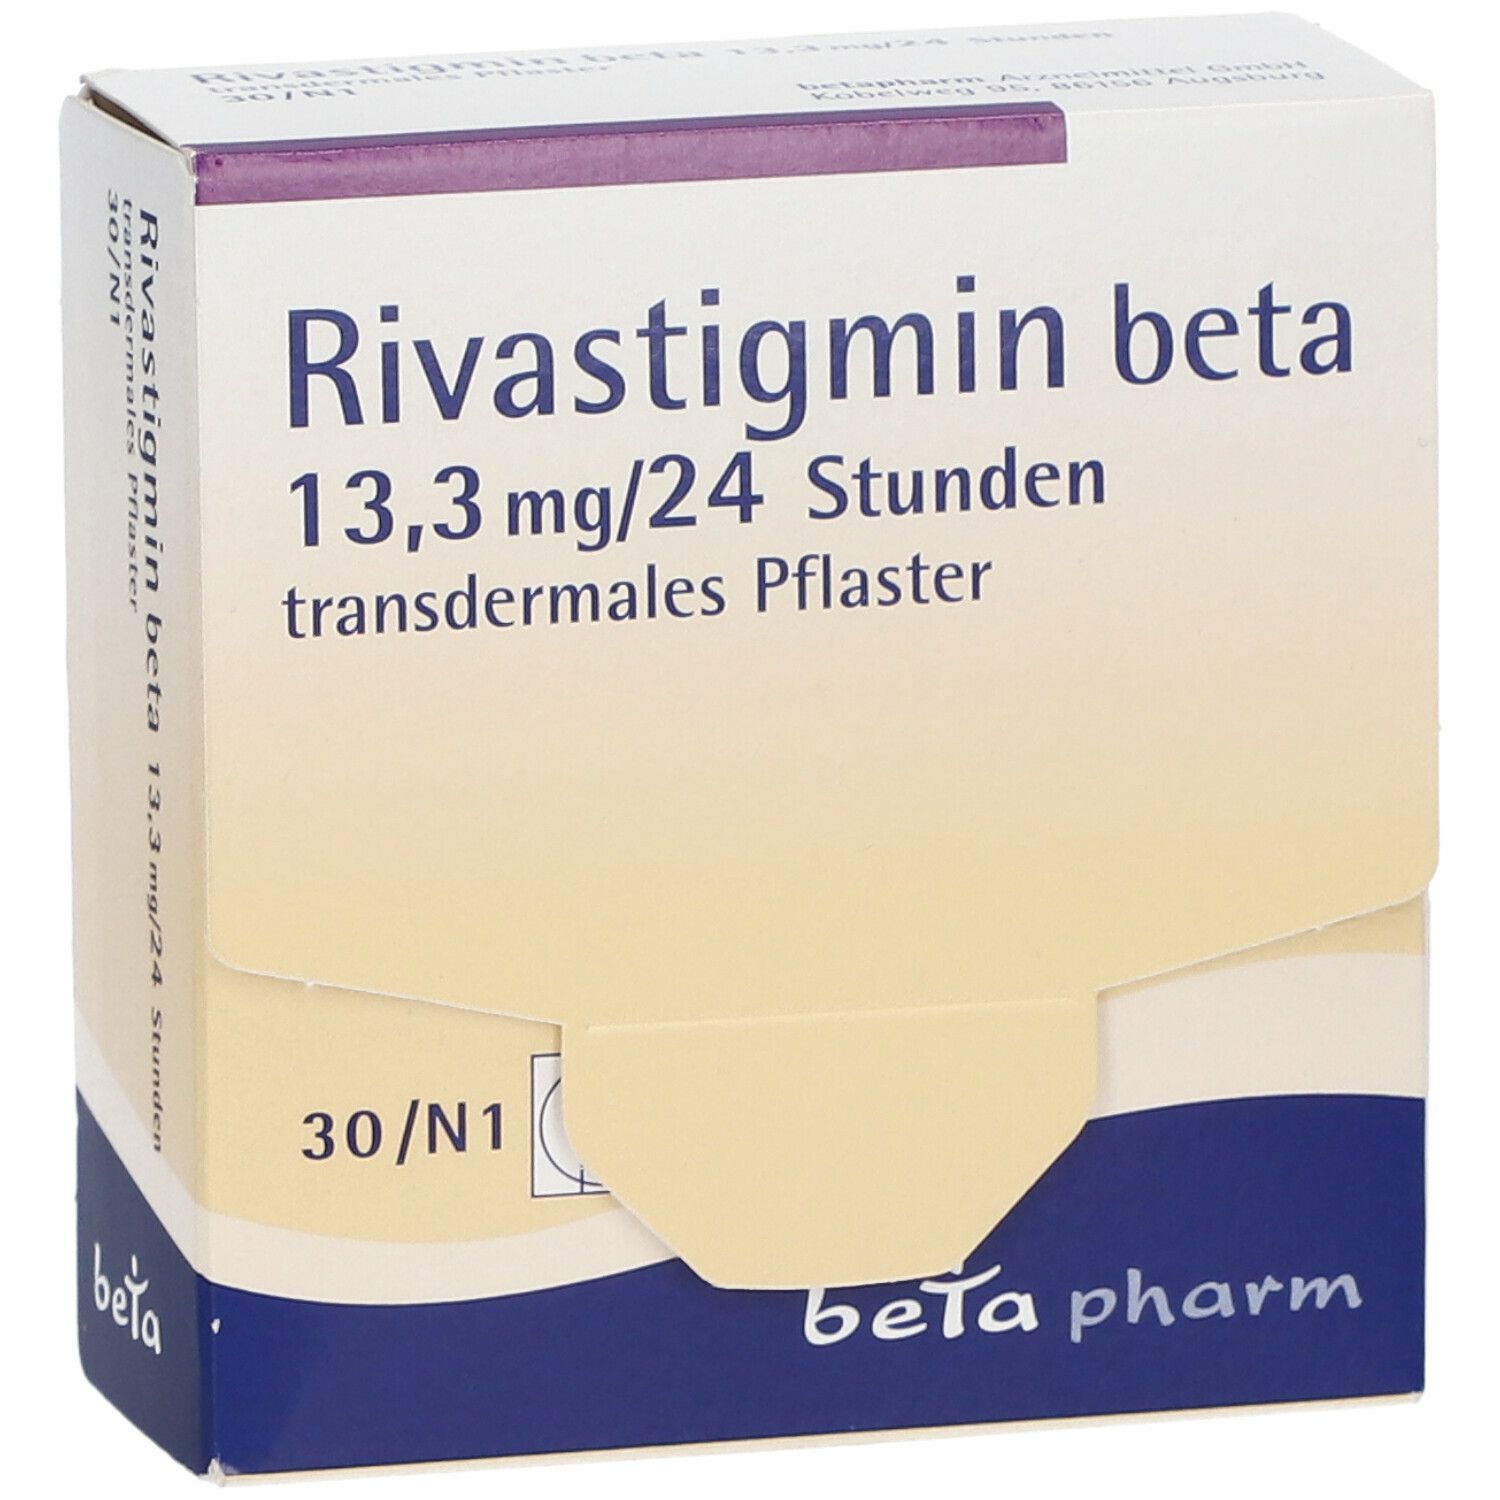 Rivastigmin beta 13,3 mg/24 Stunden